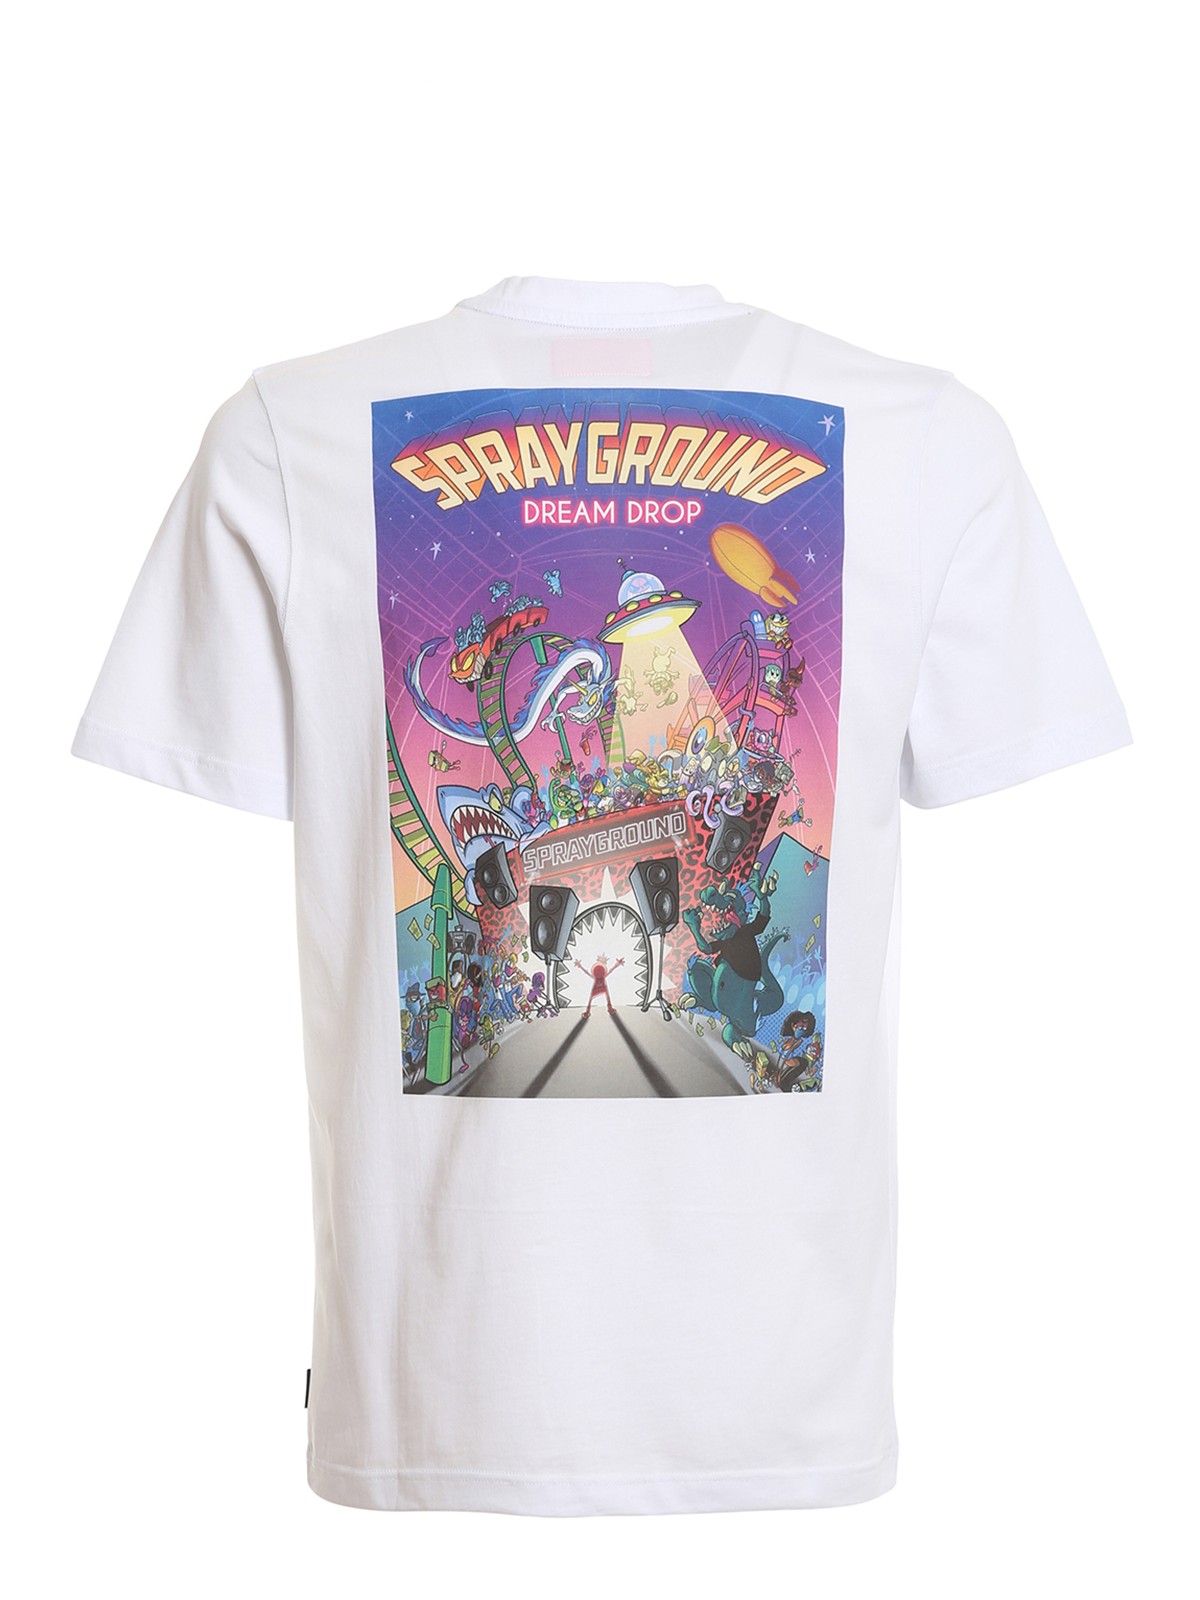 Shop Sprayground Printed T-shirt In White